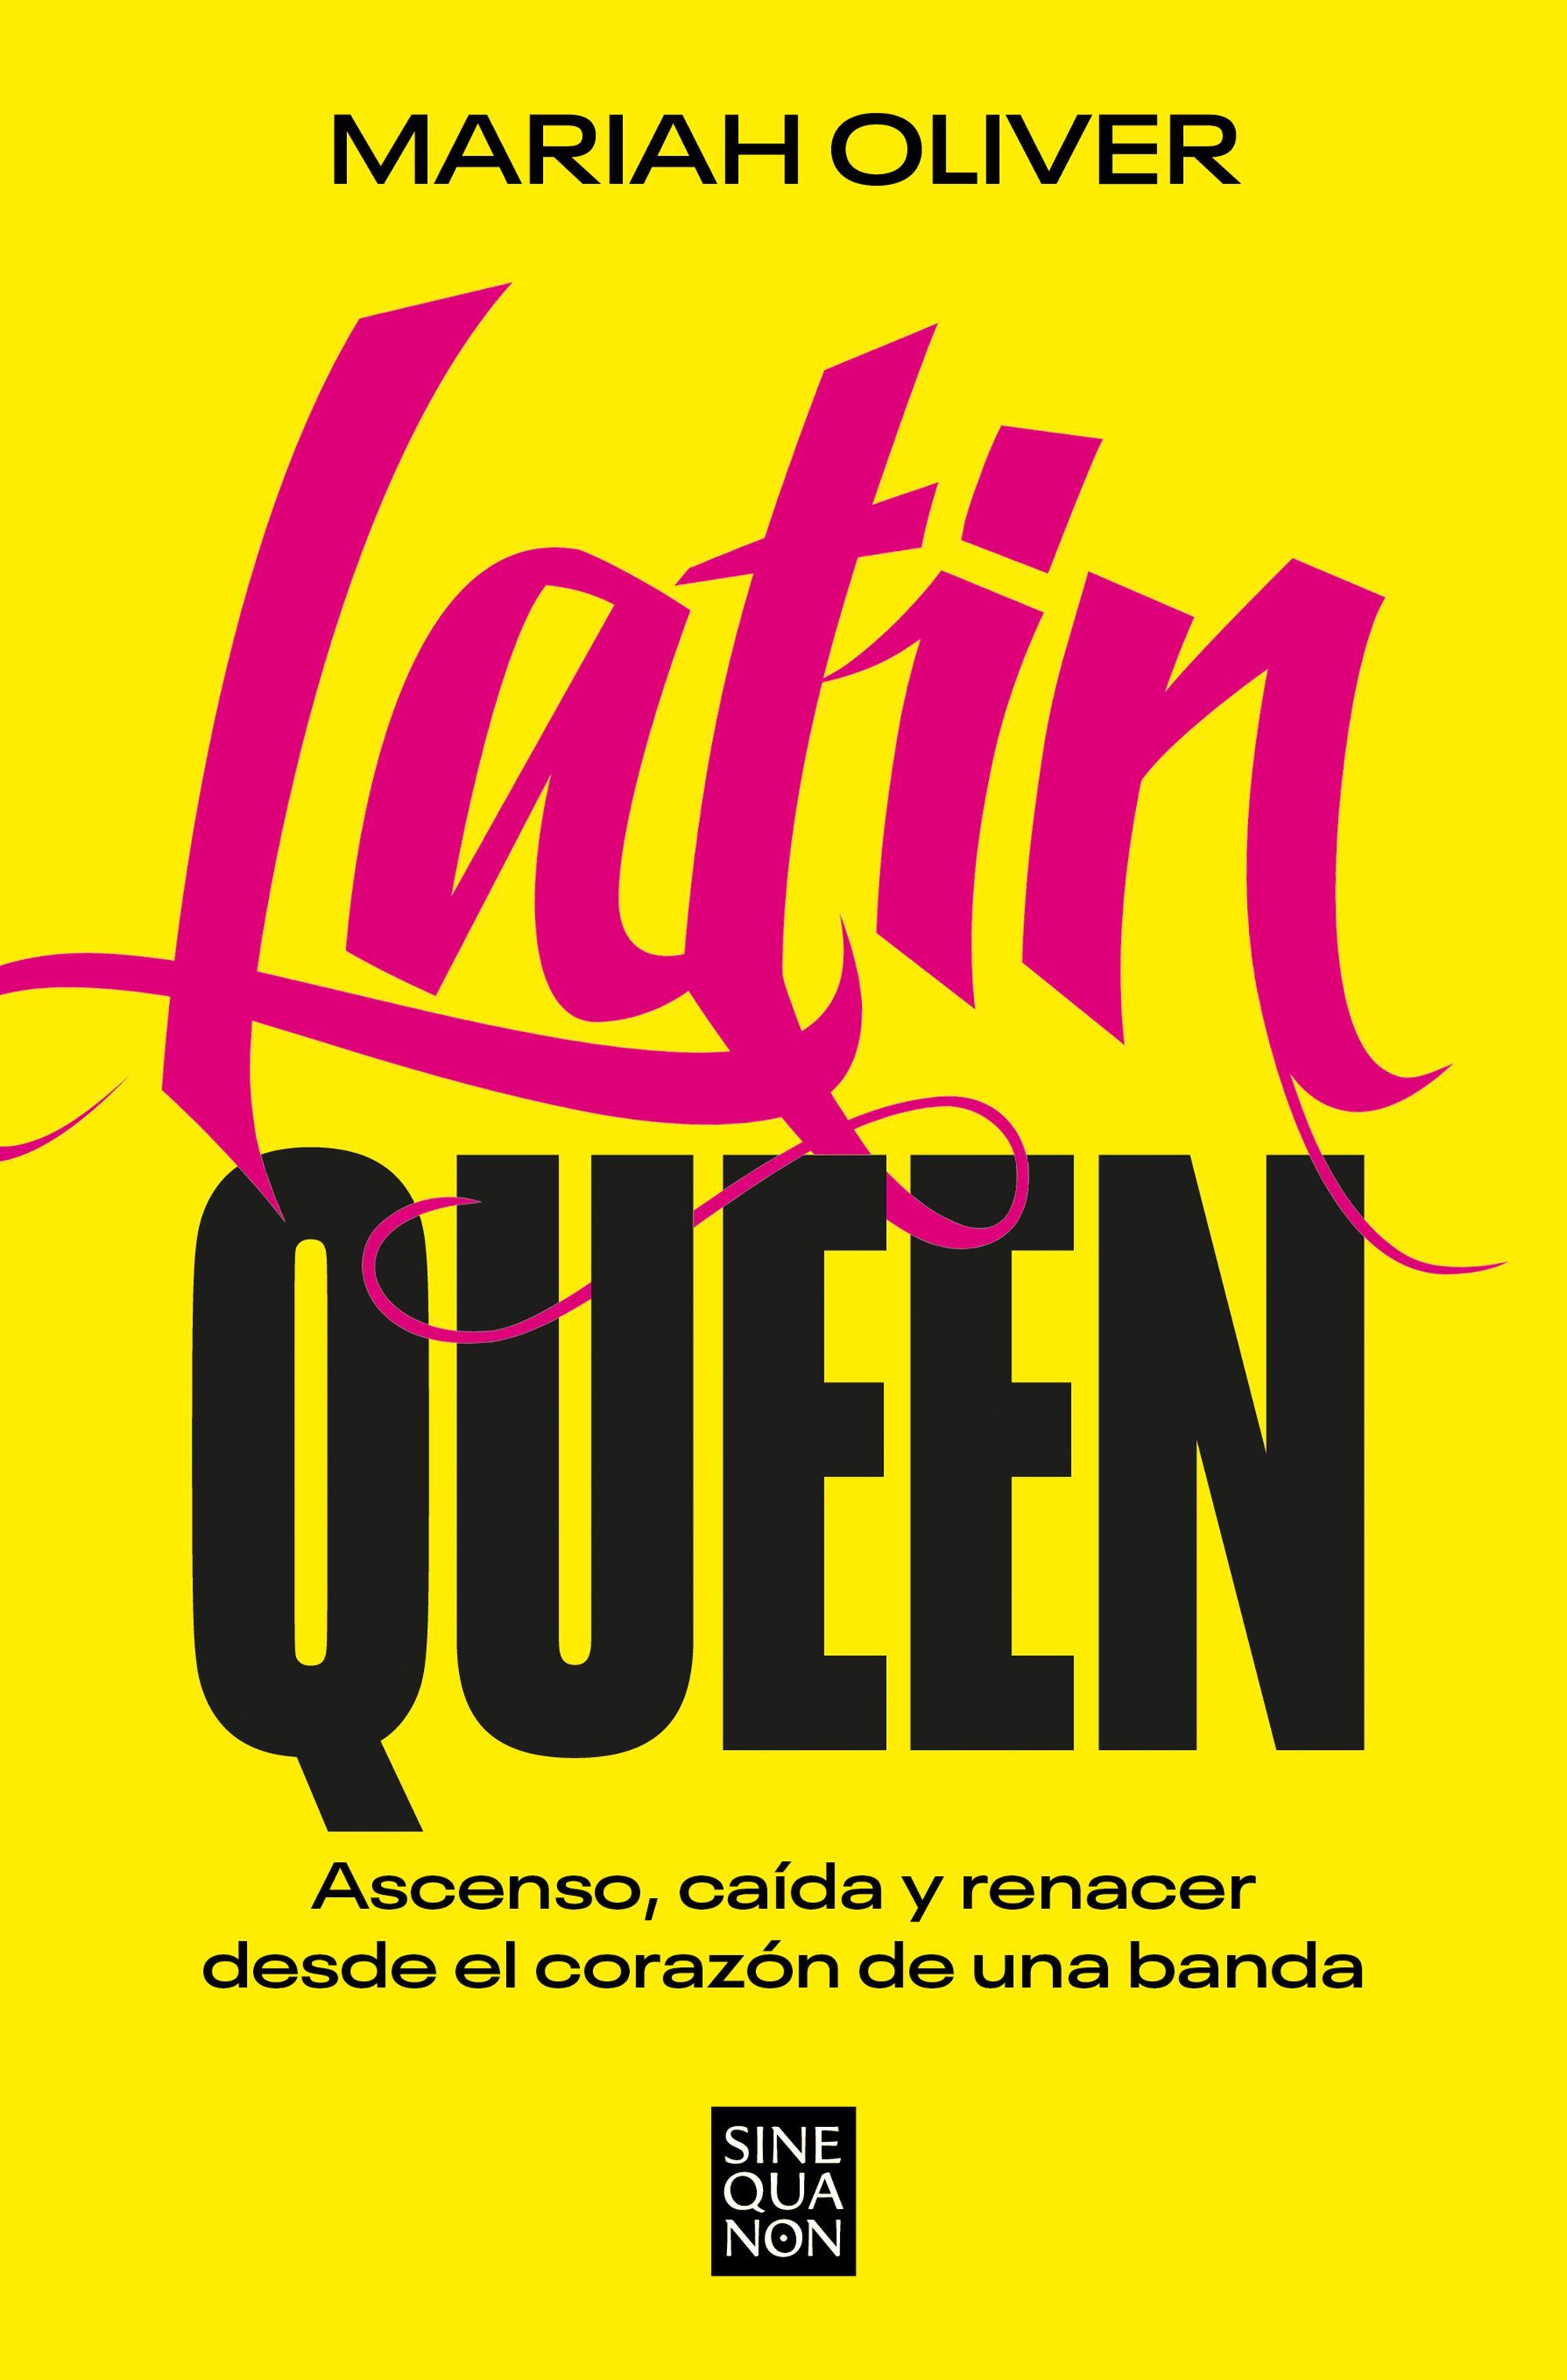 La portada del libro ‘Latin Queen’.